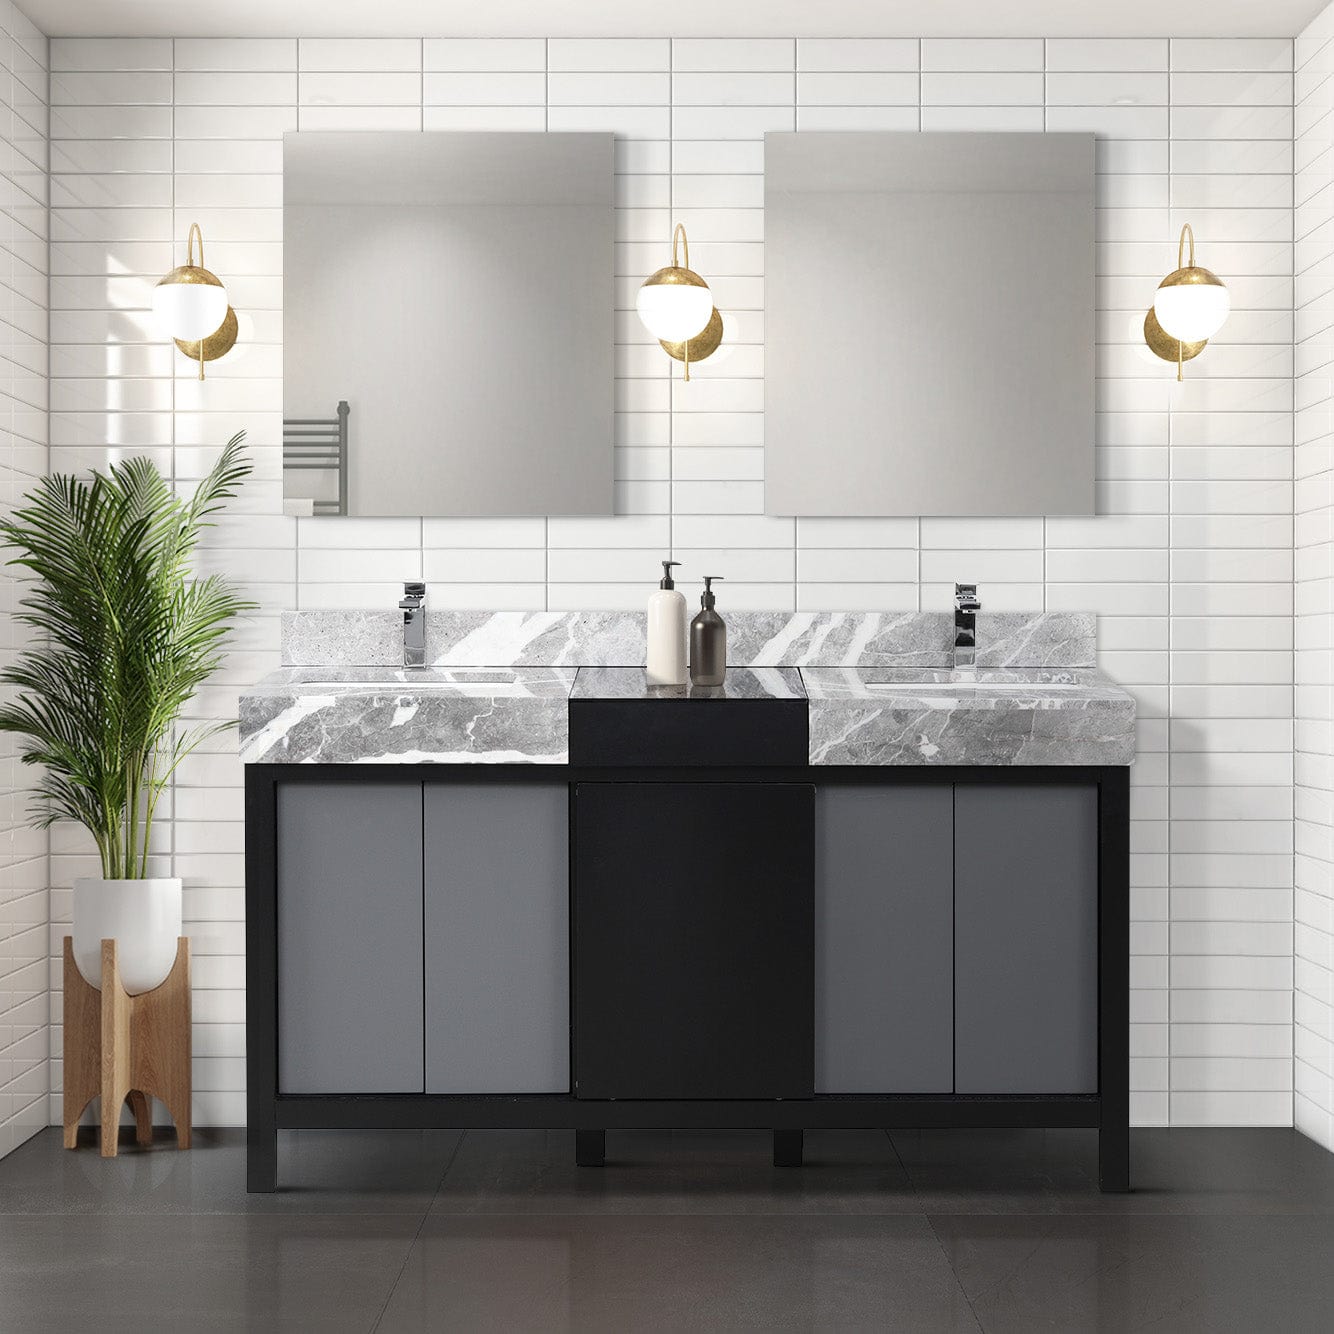 Lexora Bathroom Vanity Castle Grey Marble / Vesper Chrome Faucet / No Mirror Vinter 60" Black and Grey Double Vanity